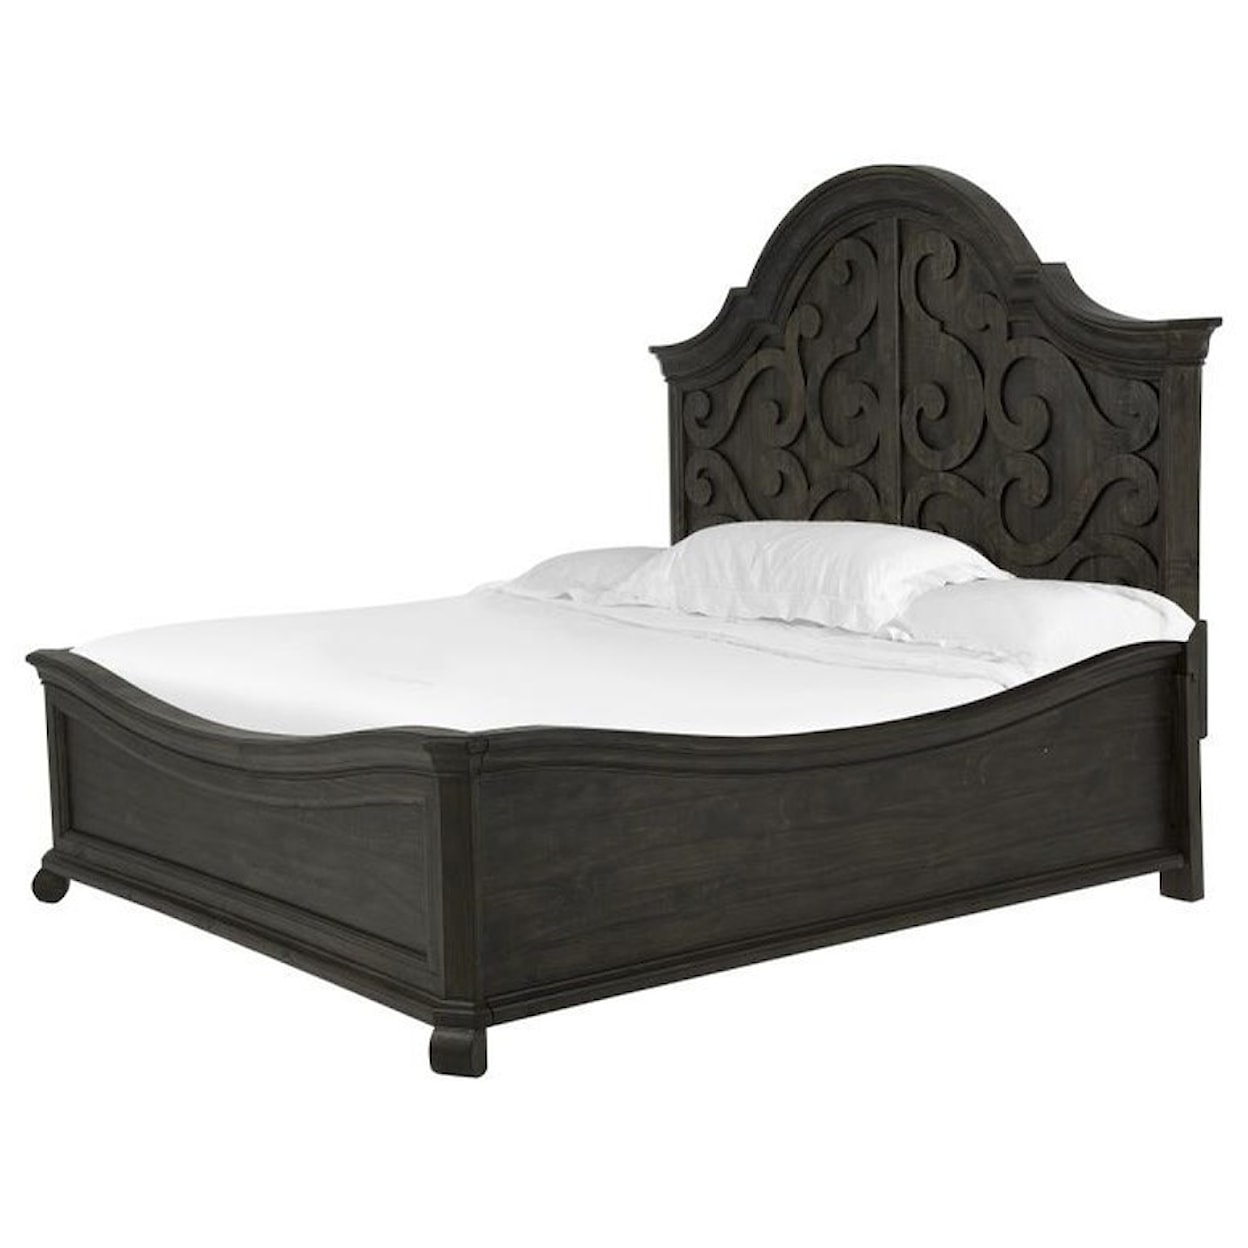 Magnussen Home Furniture Monterrey Queen Shaped Panel Bed